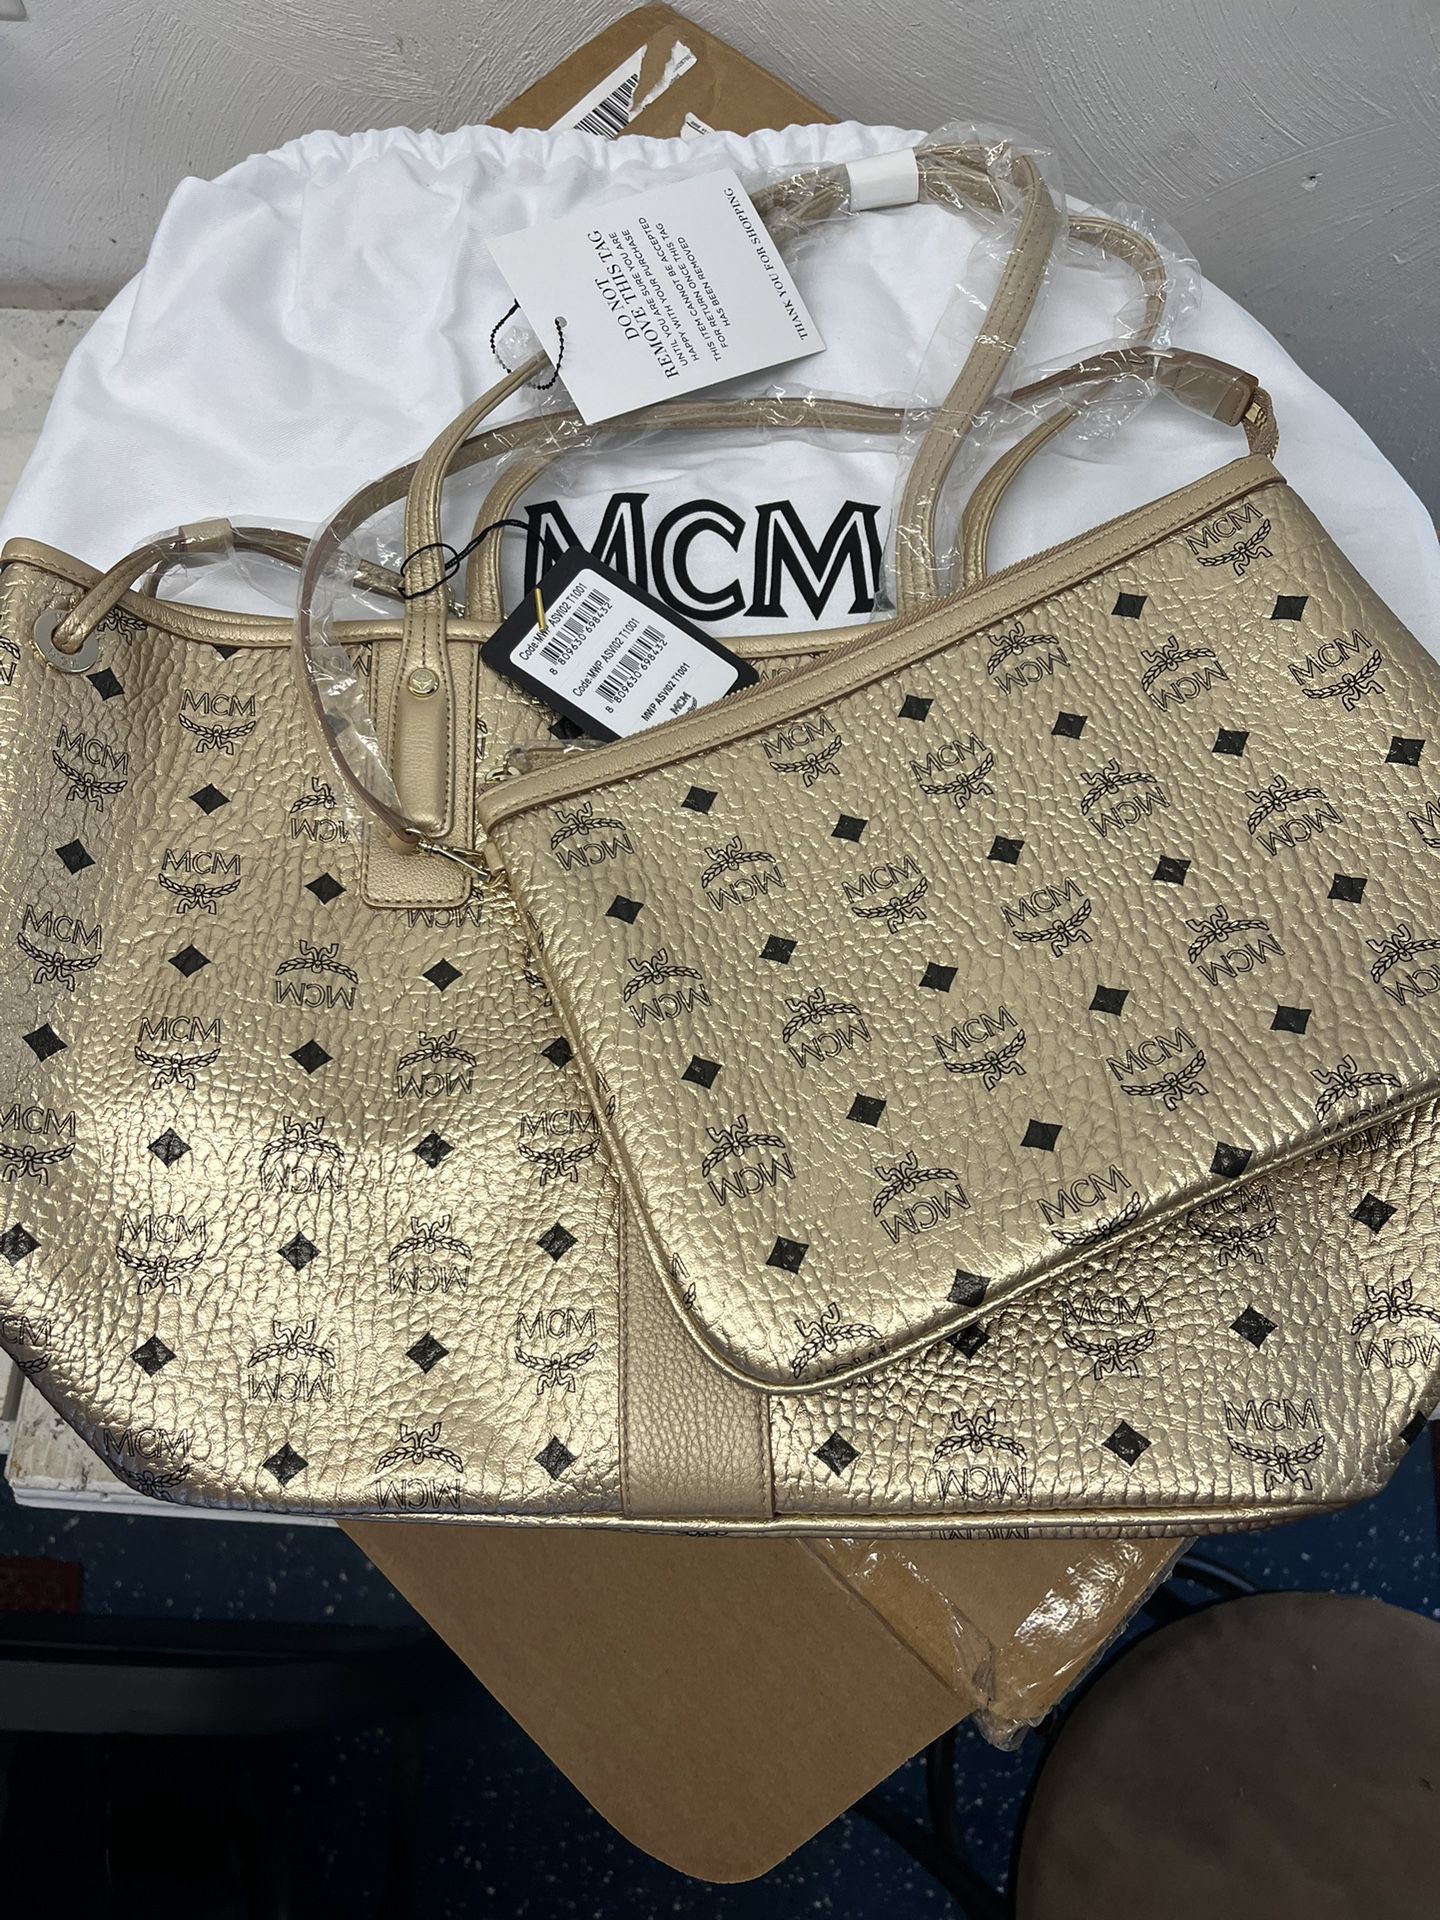 Authentic MCM Bag & Tote $550